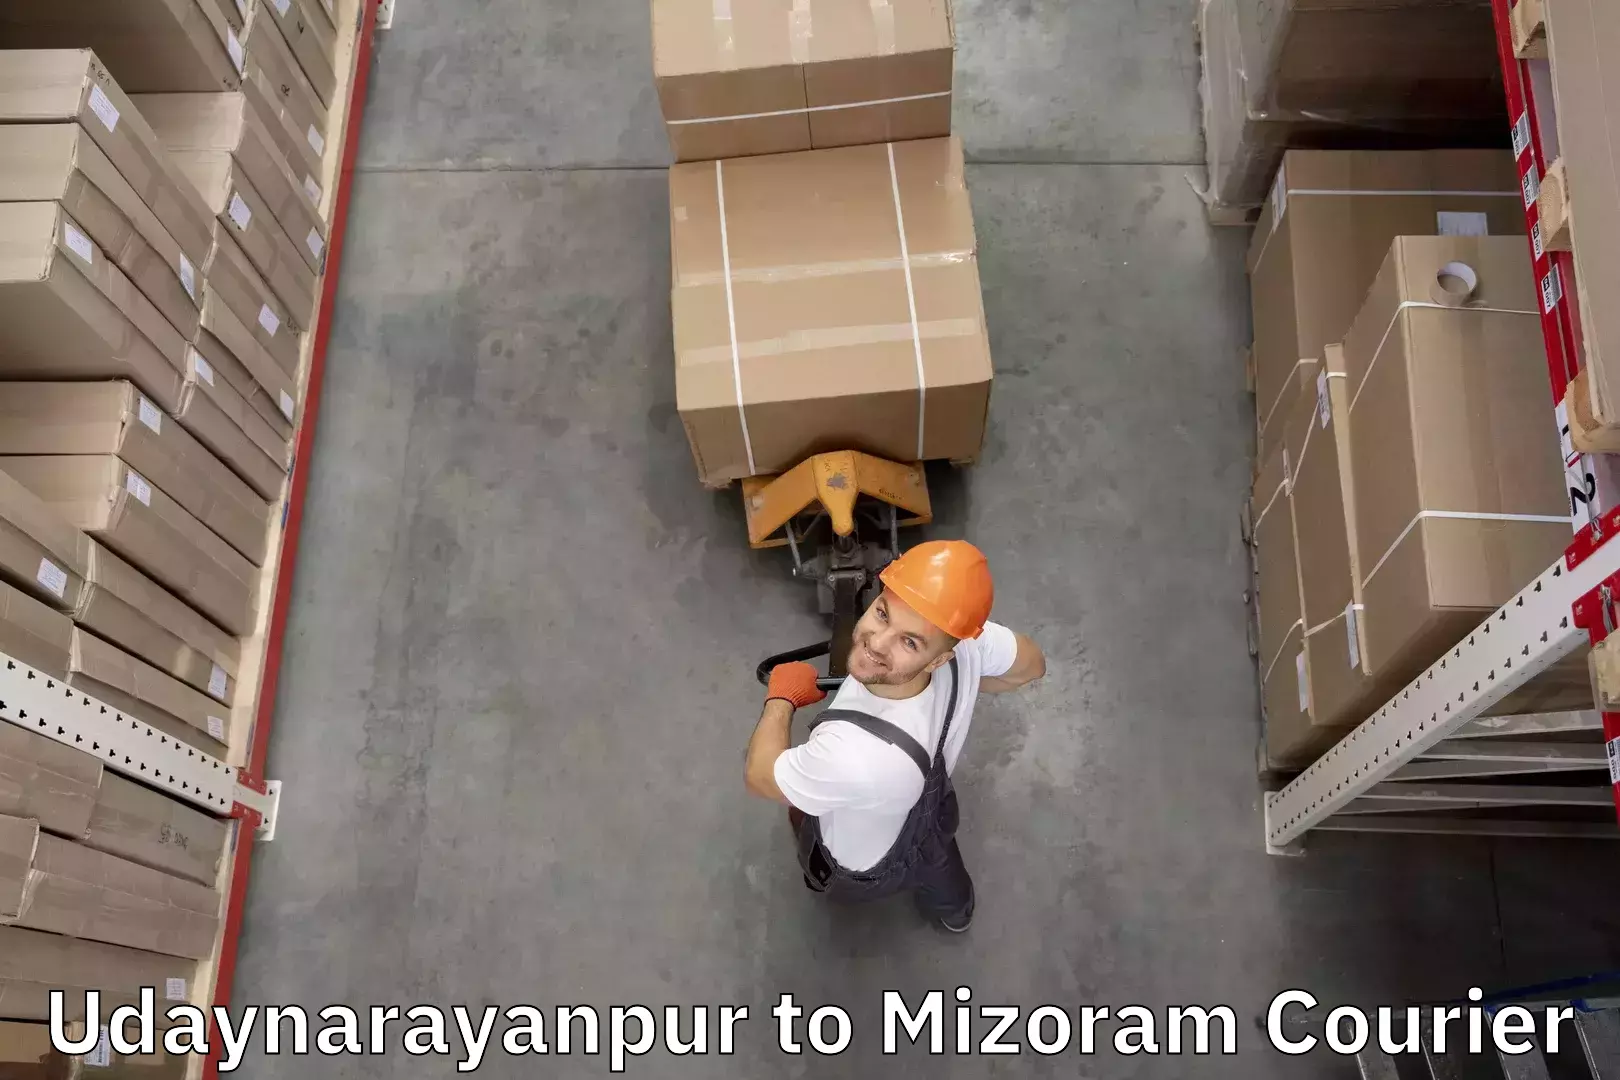 Baggage transport management Udaynarayanpur to Serchhip